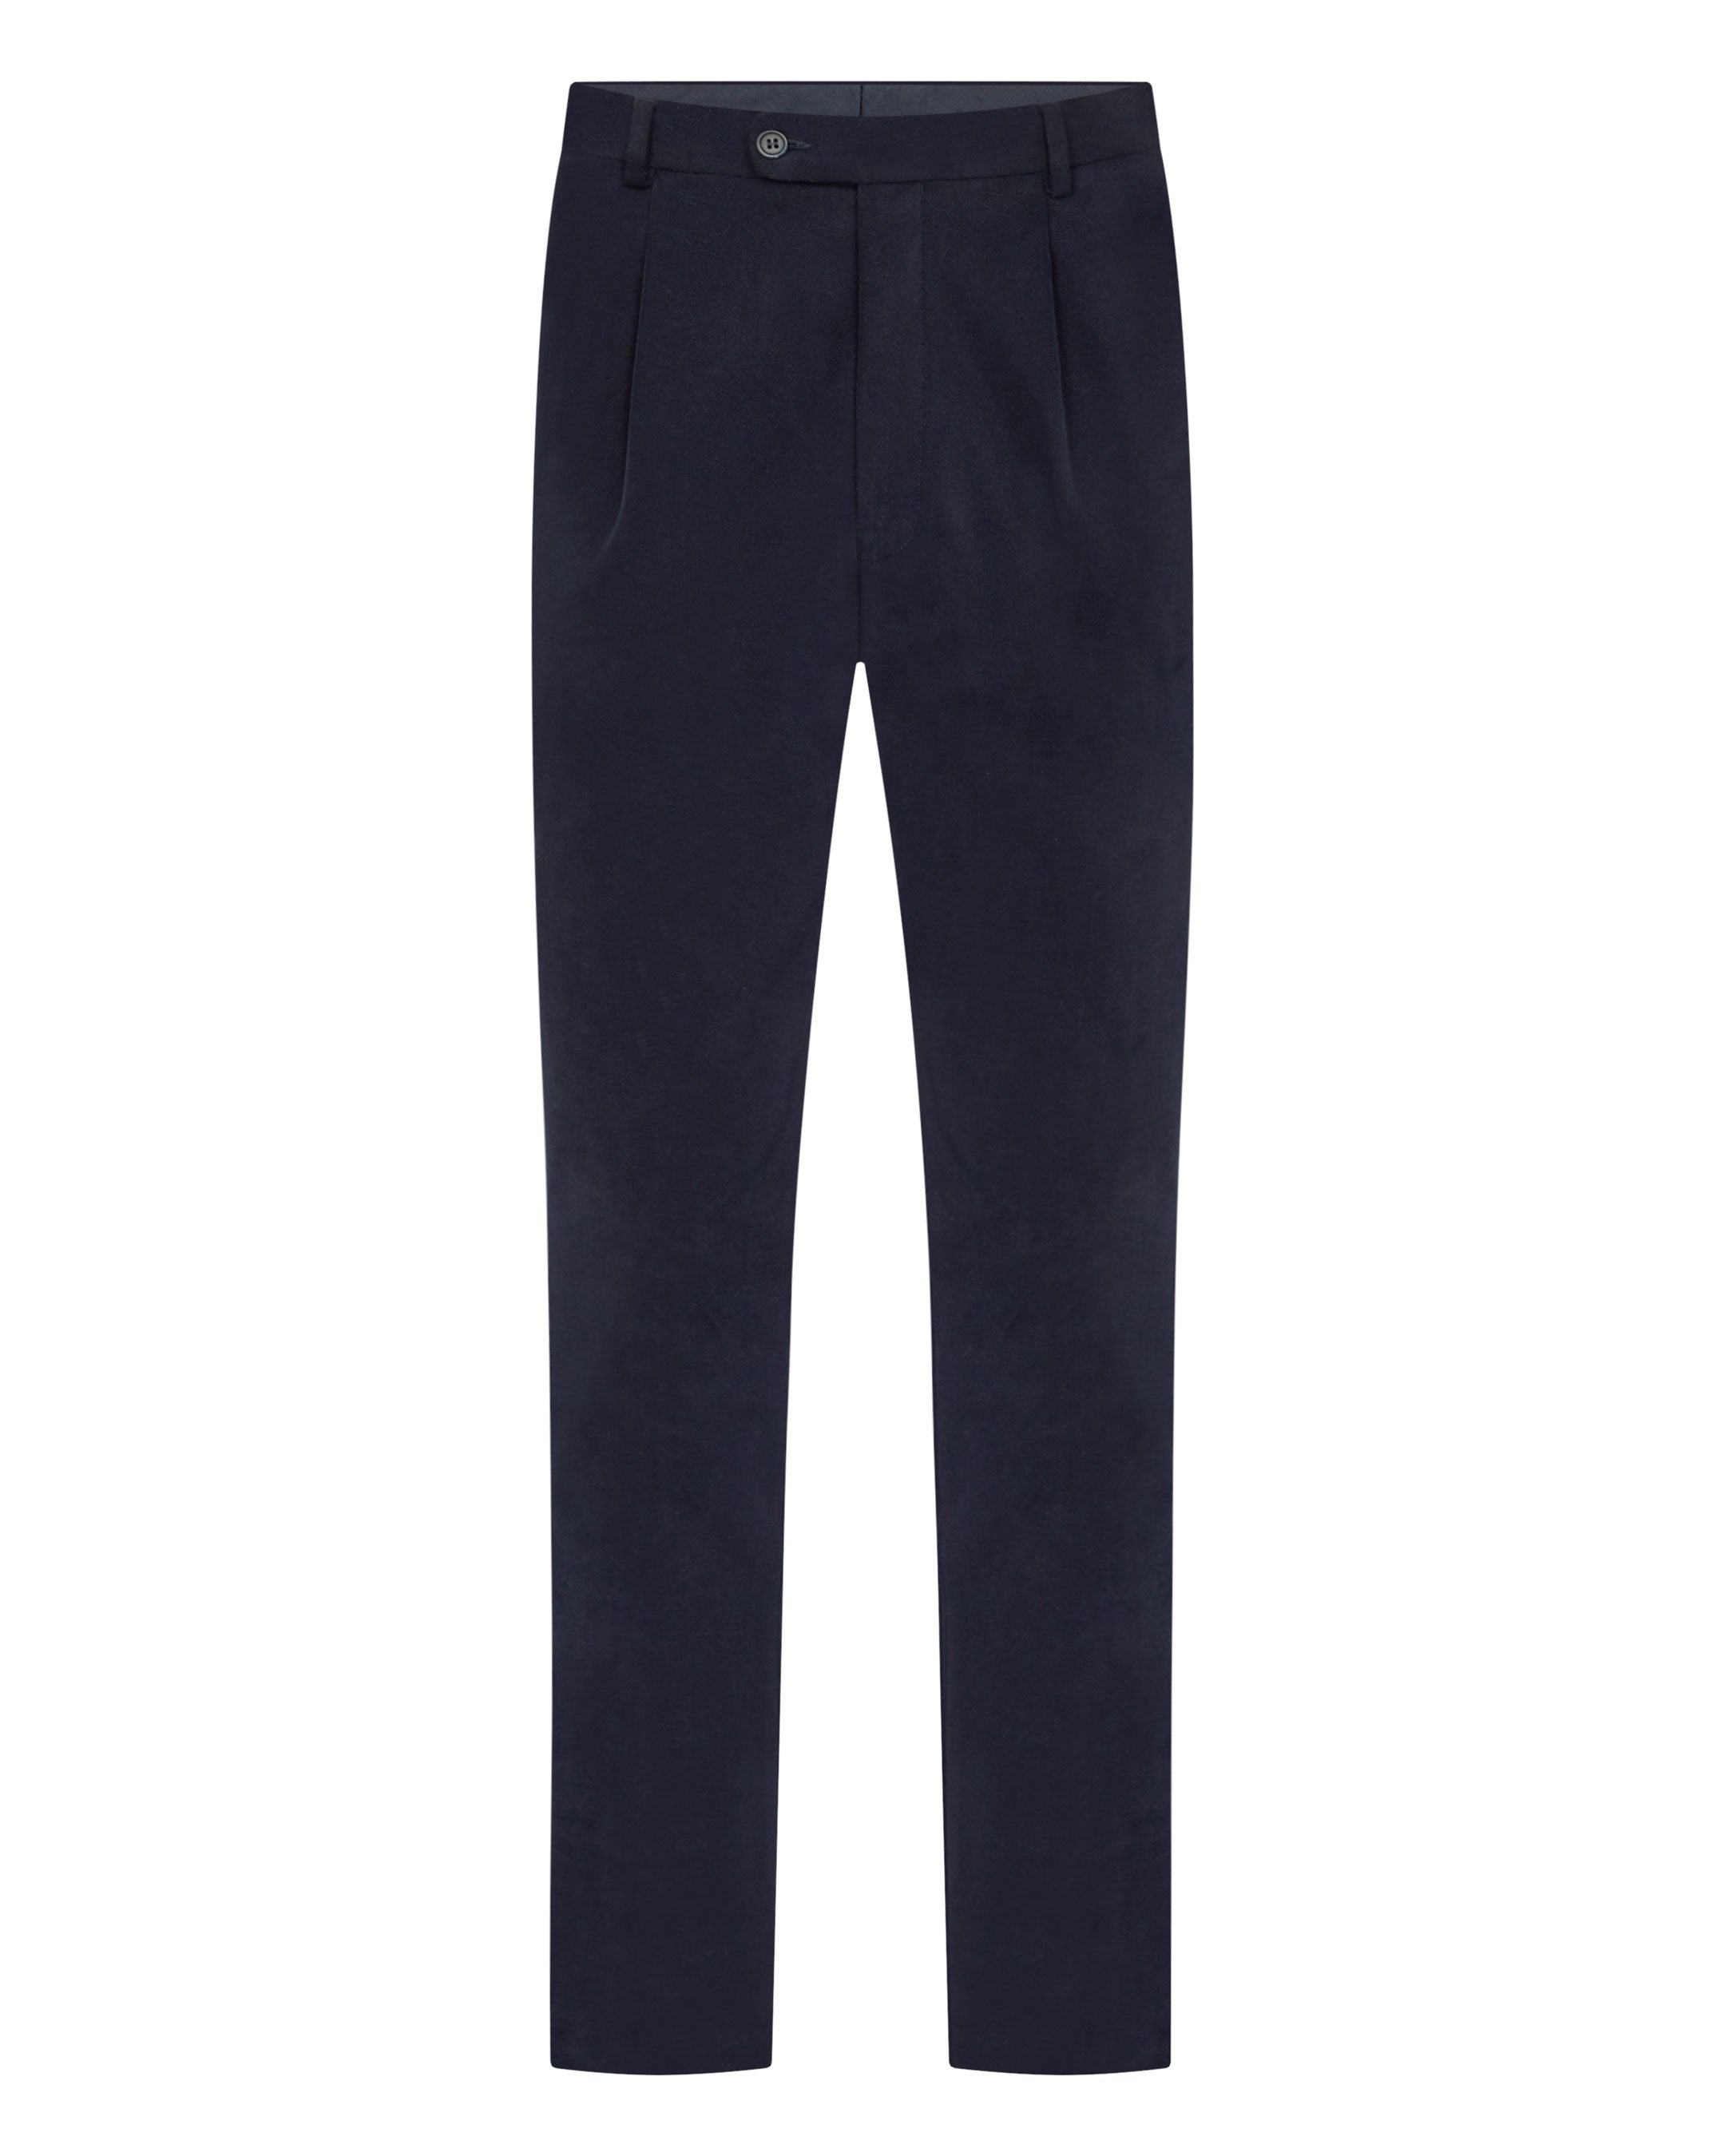 Polo Ralph Lauren Navy Blue Cotton Twill Trousers XL Polo Ralph Lauren | TLC